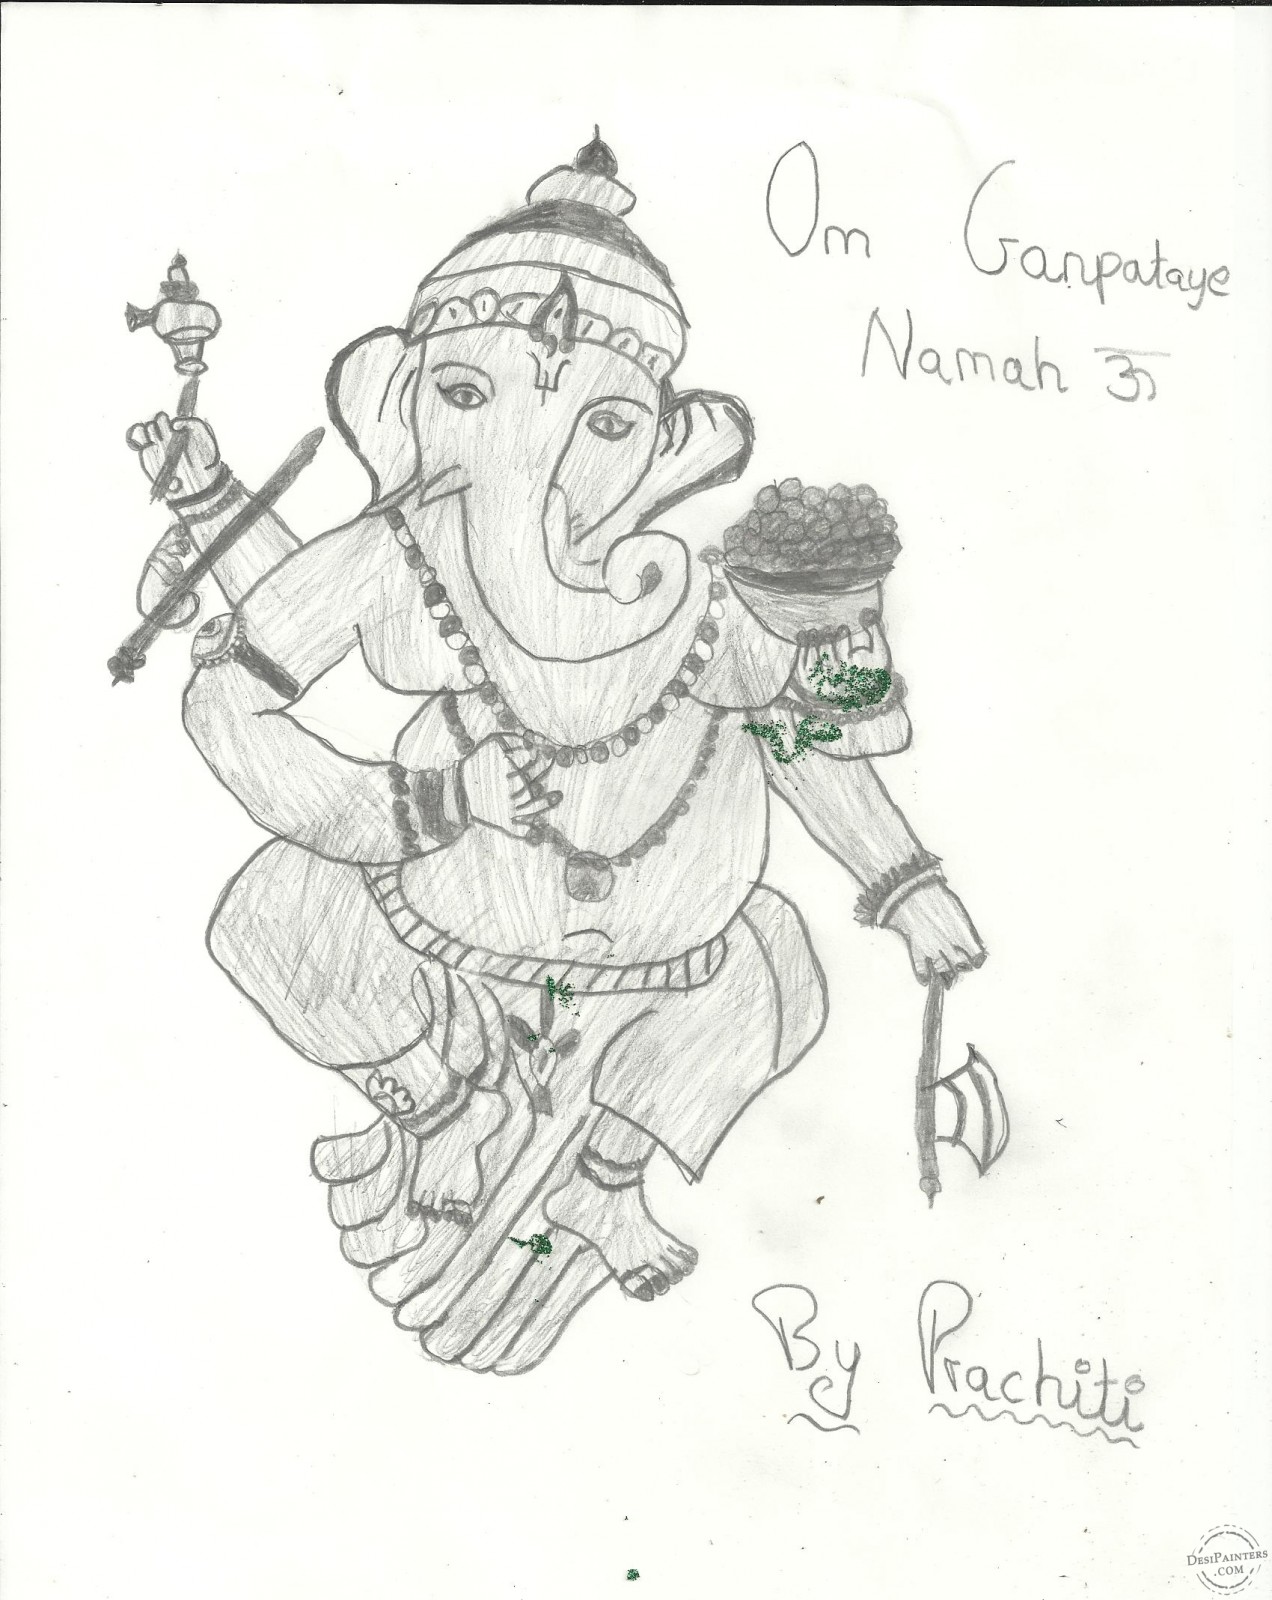 Lord Ganesha drawing 🙏 : r/painting